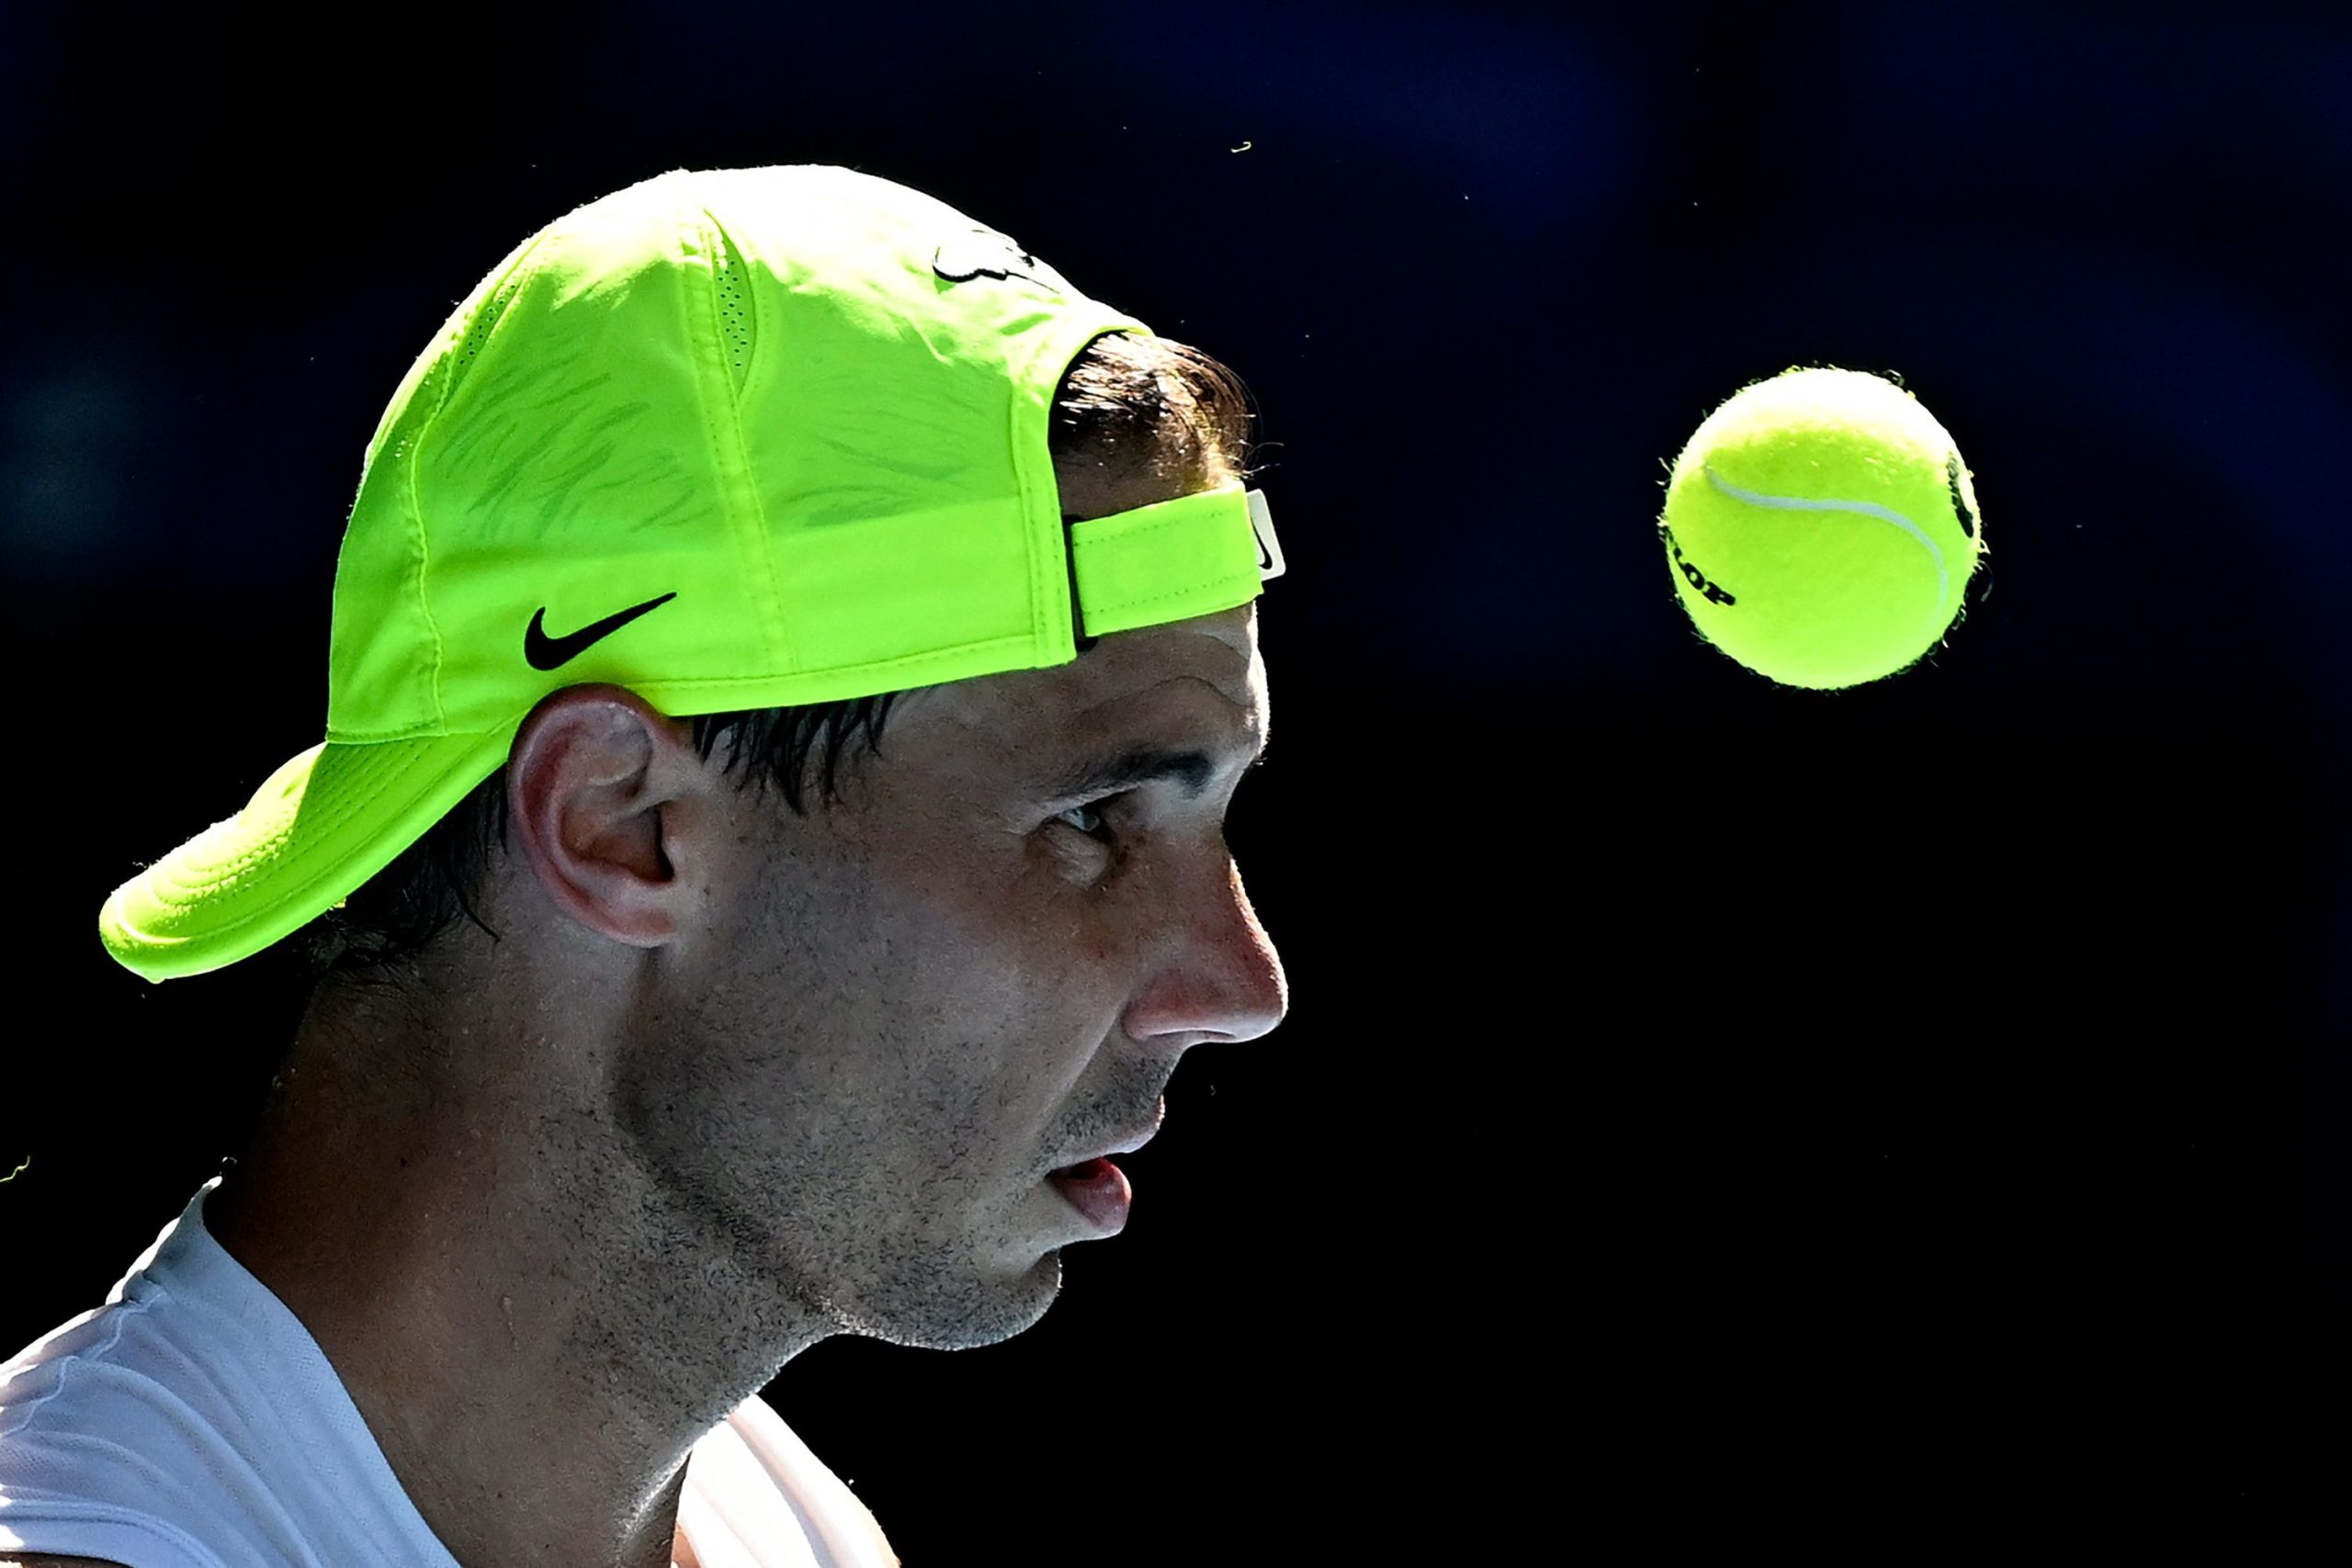 Nuevo técnico, malos resultados, un pletórico Djokovic y un aviso: "Nadal entra ahora en modo Grand Slam"